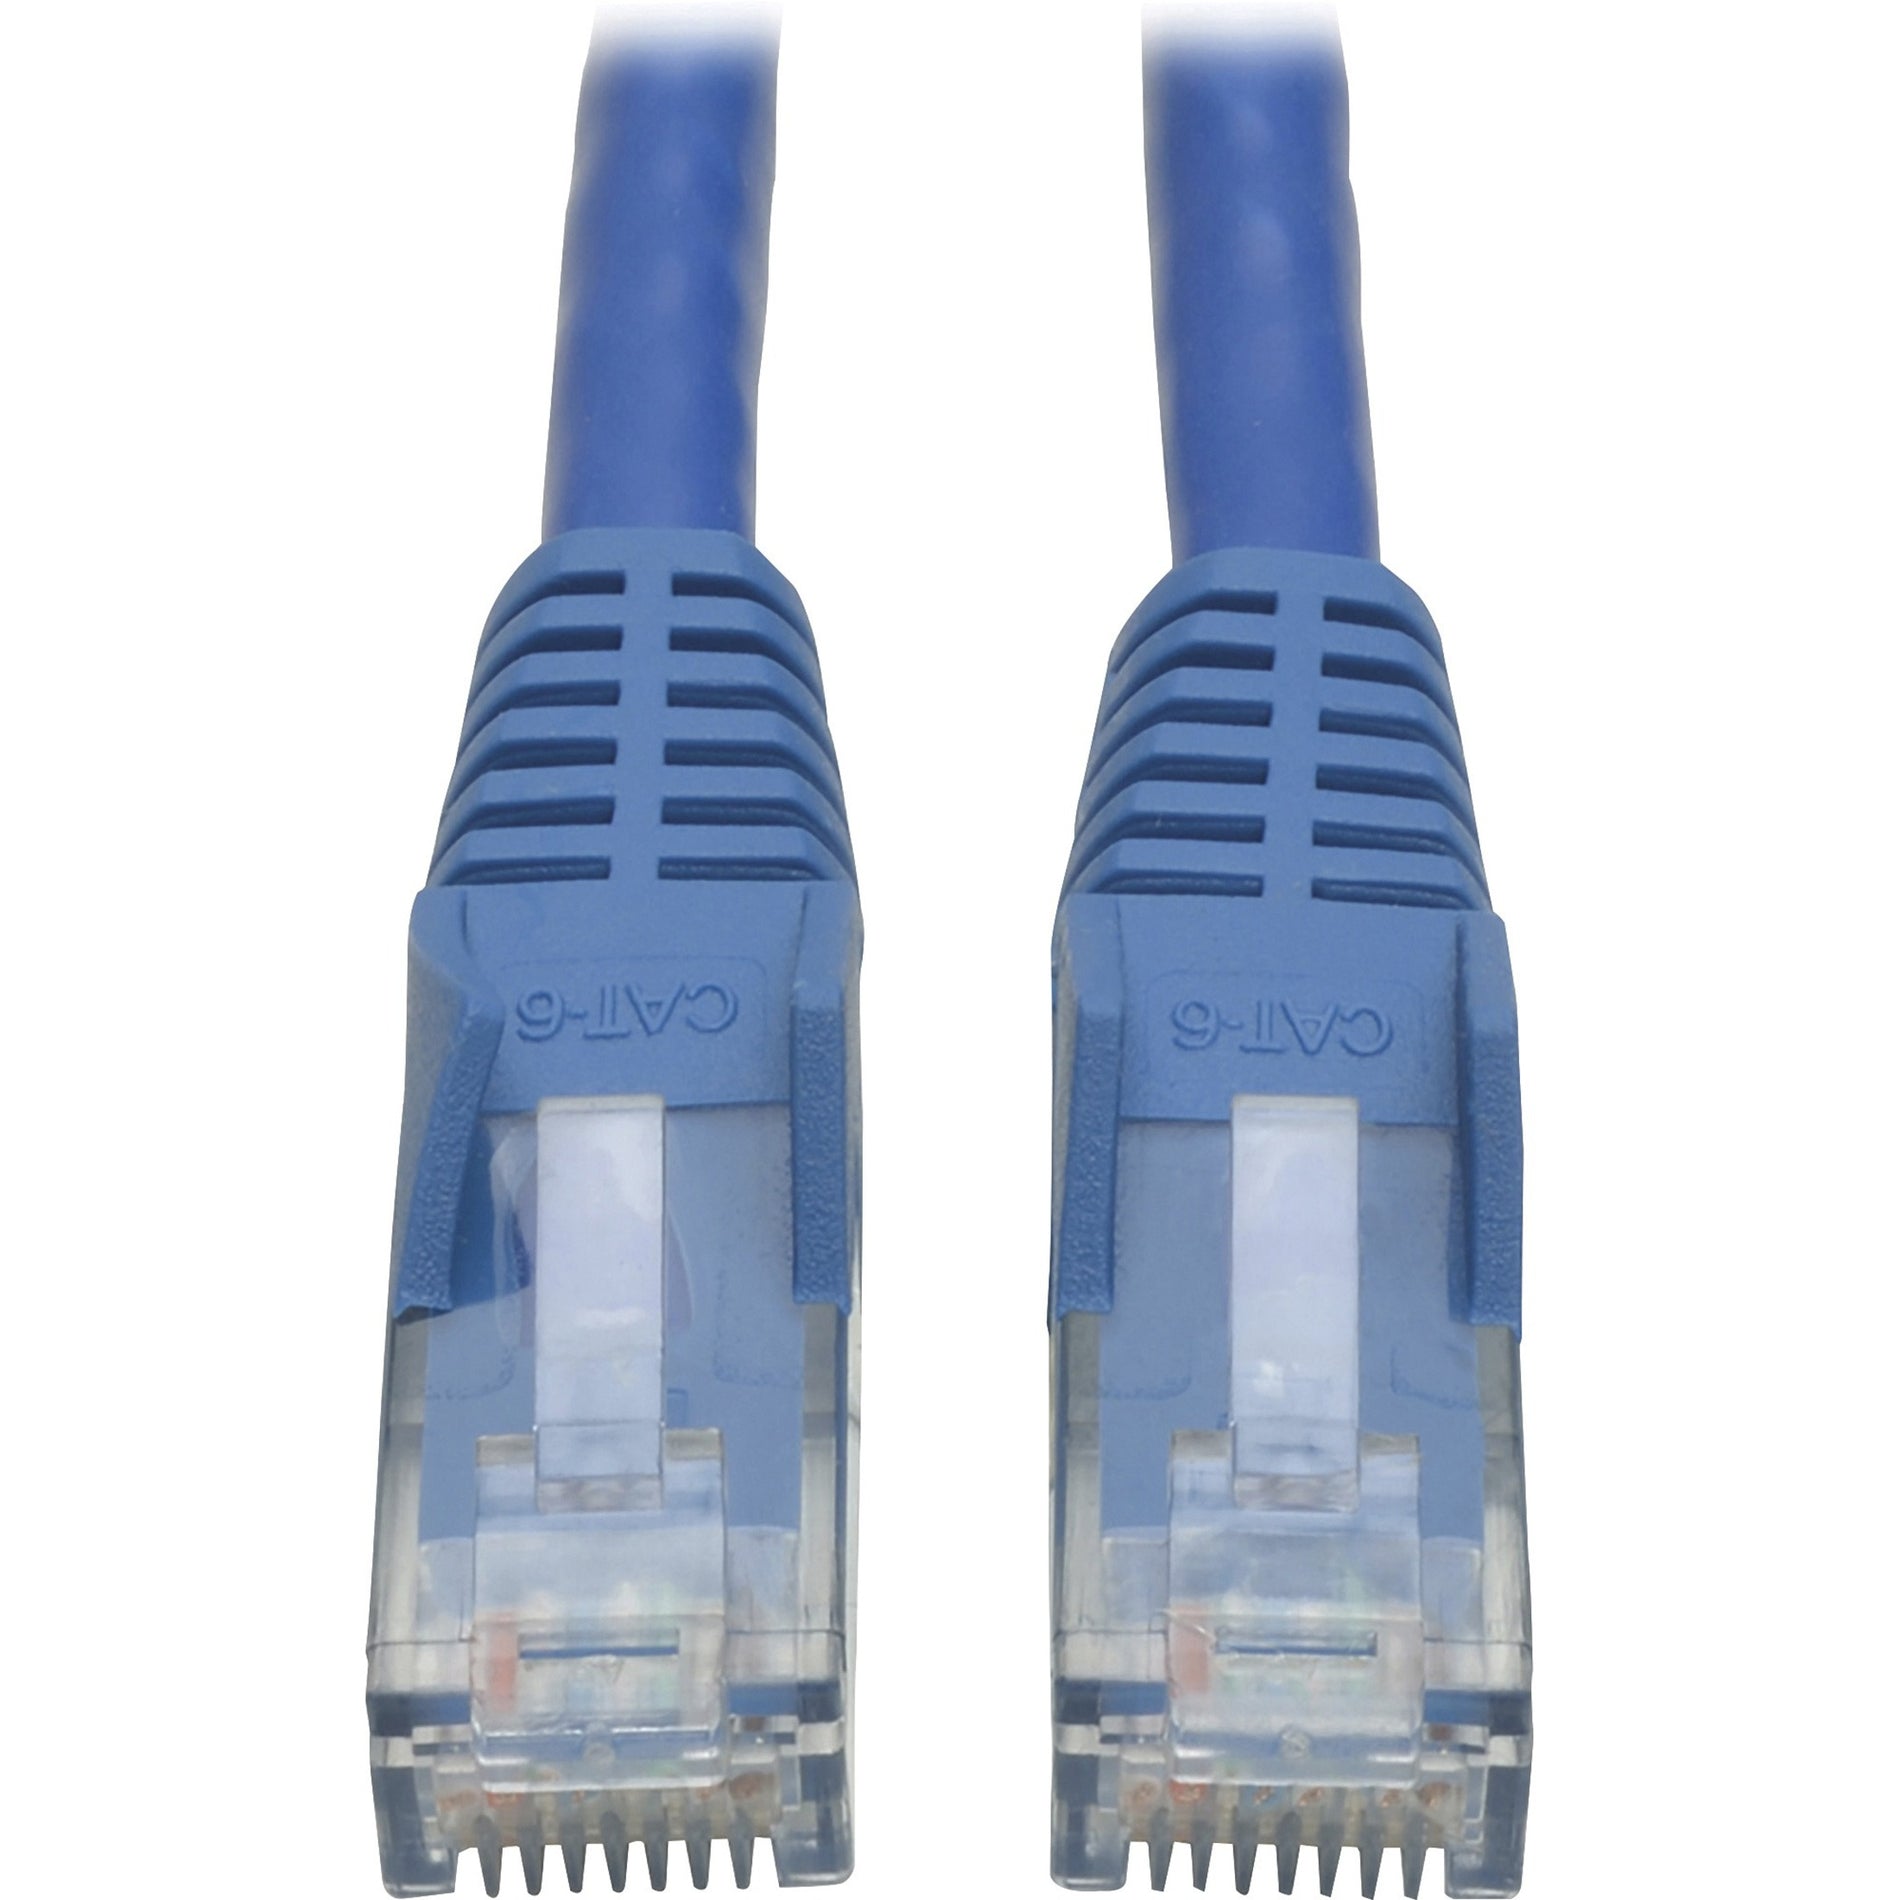 Tripp Lite N201-050-BL Cat6 Cable, 50 ft Blue, Lifetime Warranty